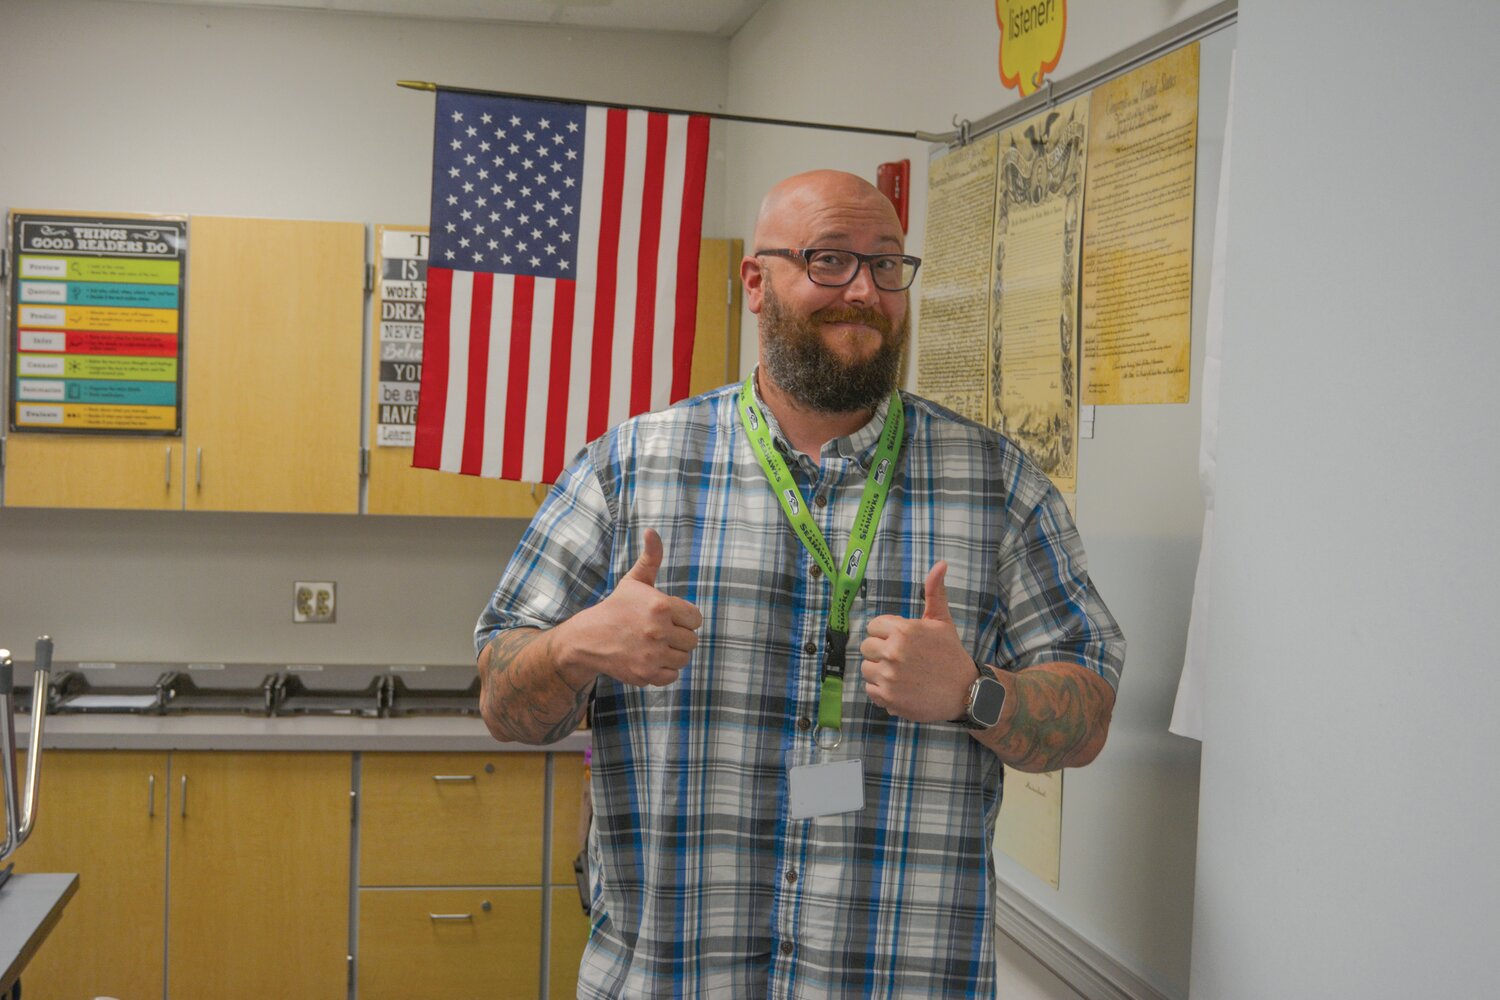 William Warren smiles in his Ridgeline Middle School classroom on Nov. 7.